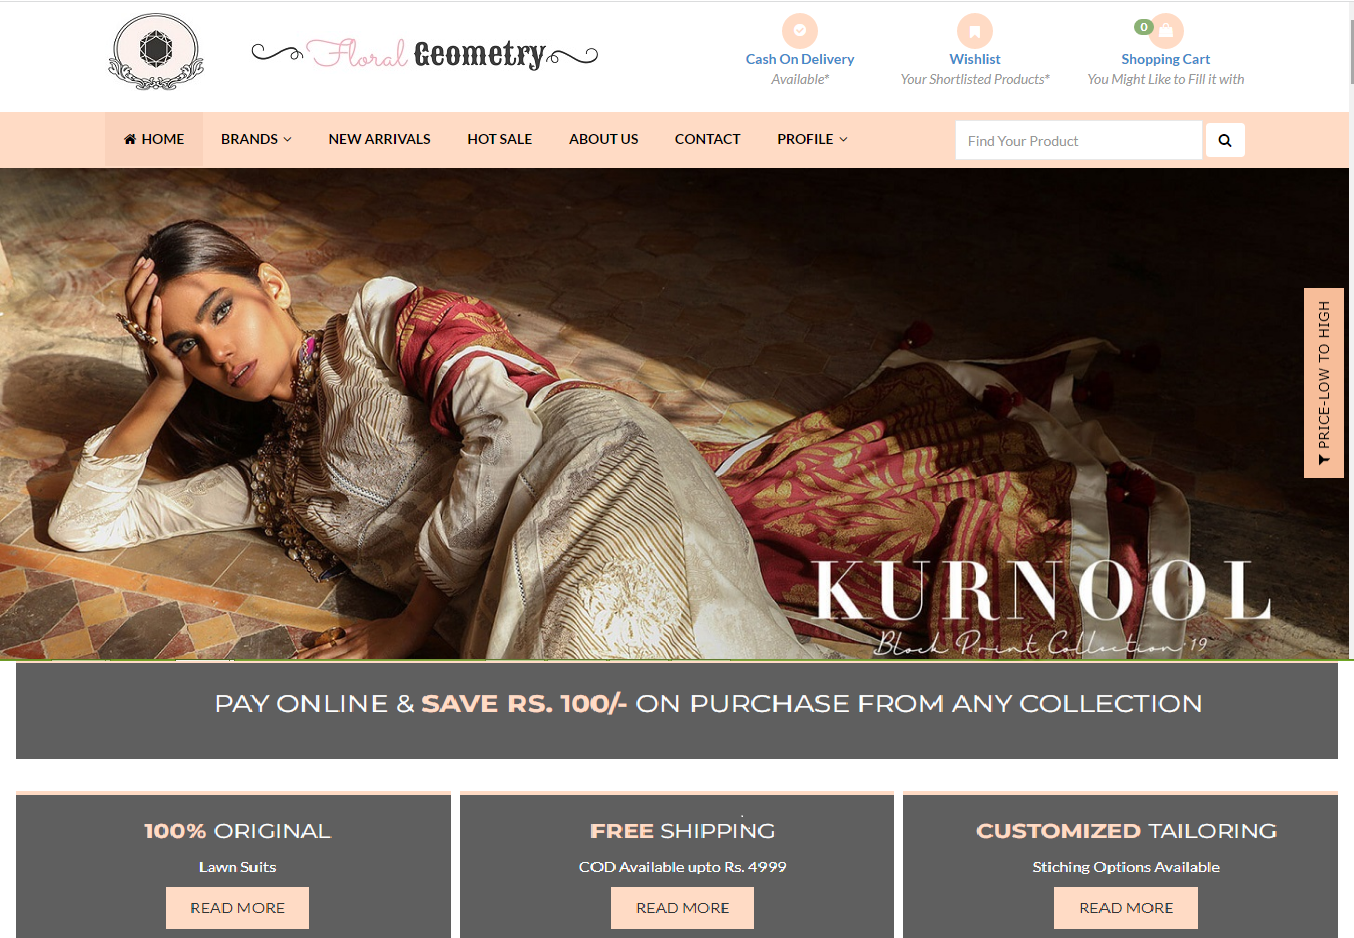 An E-Commerce Website For Original Lawn Suits